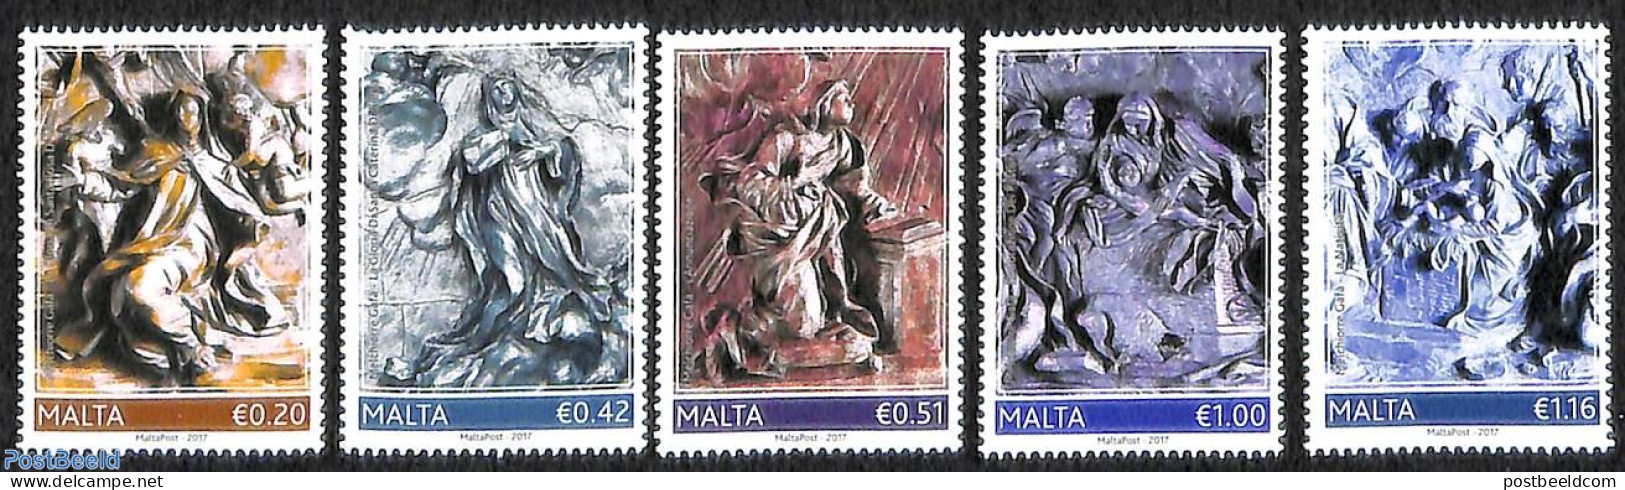 Malta 2017 Melchiorre Gafa 5v, Mint NH - Malte